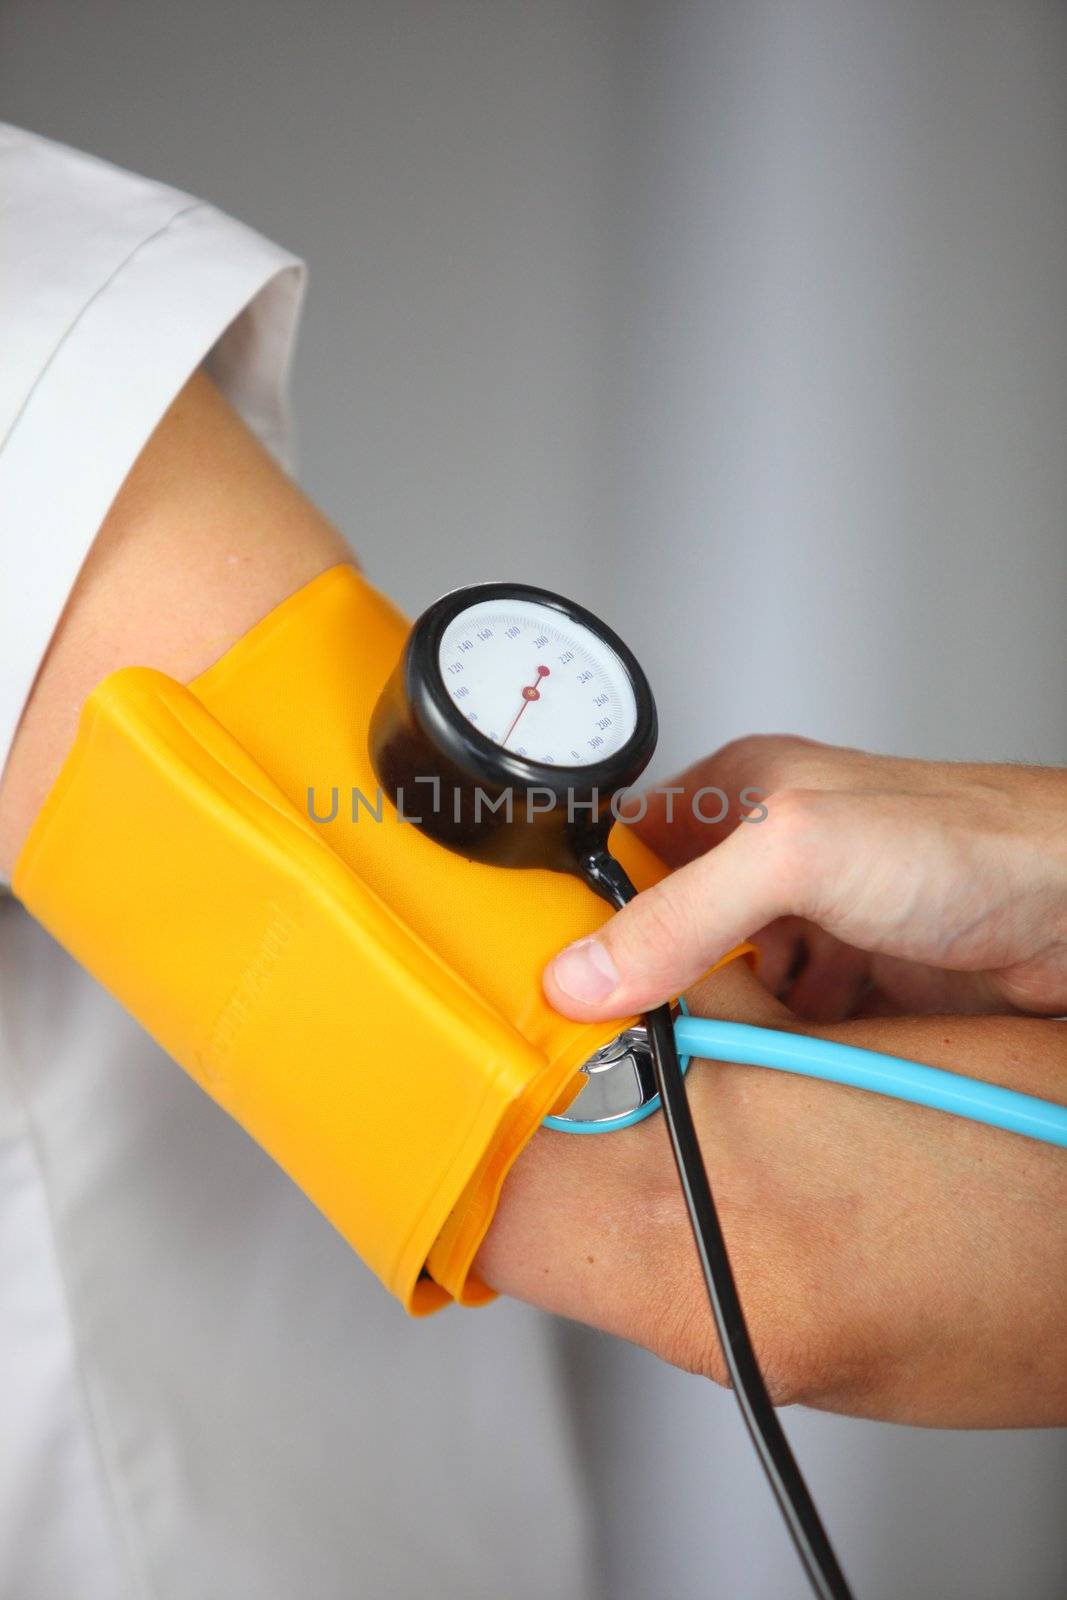 Blood pressure being taken by phovoir